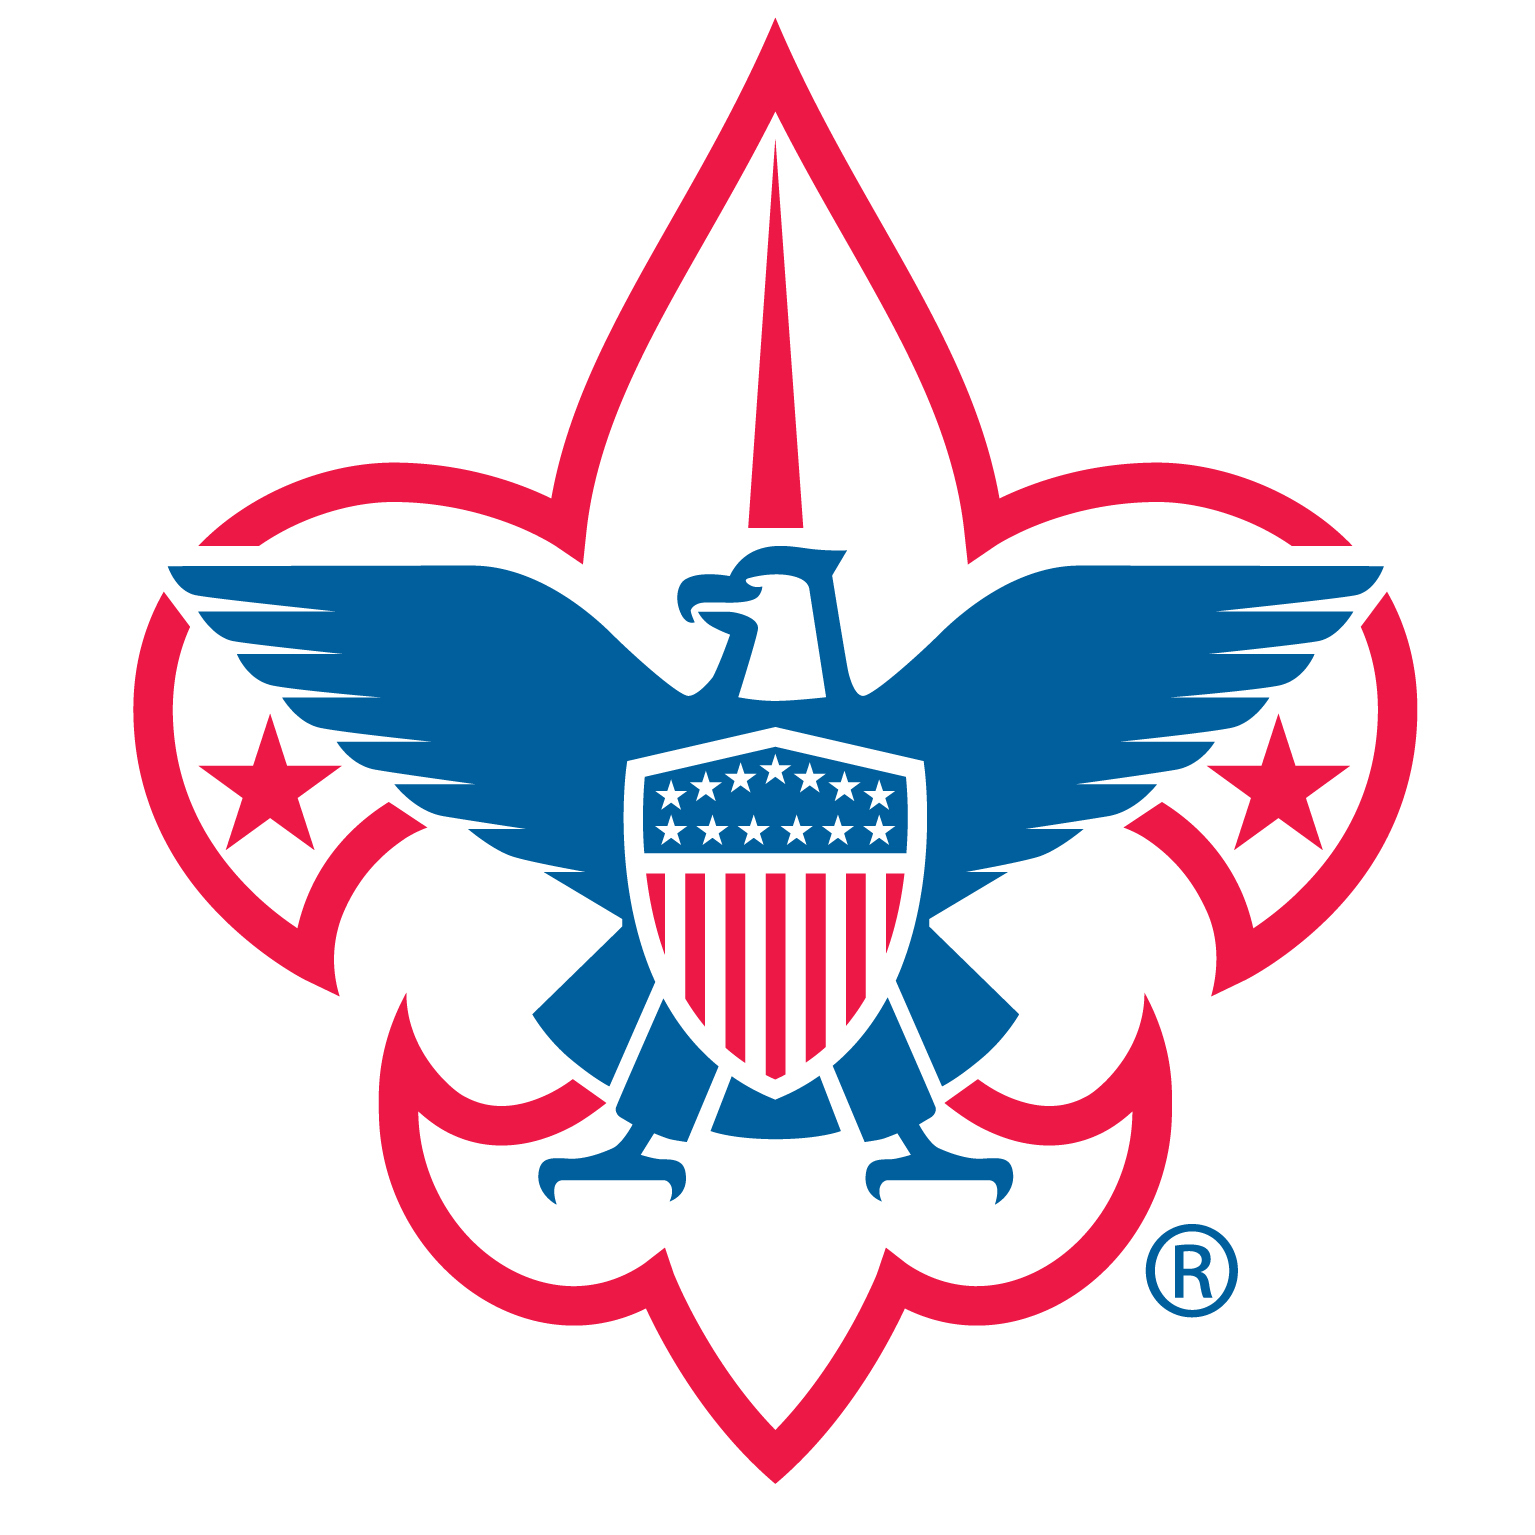 Eagle scout 2016 logo clipart